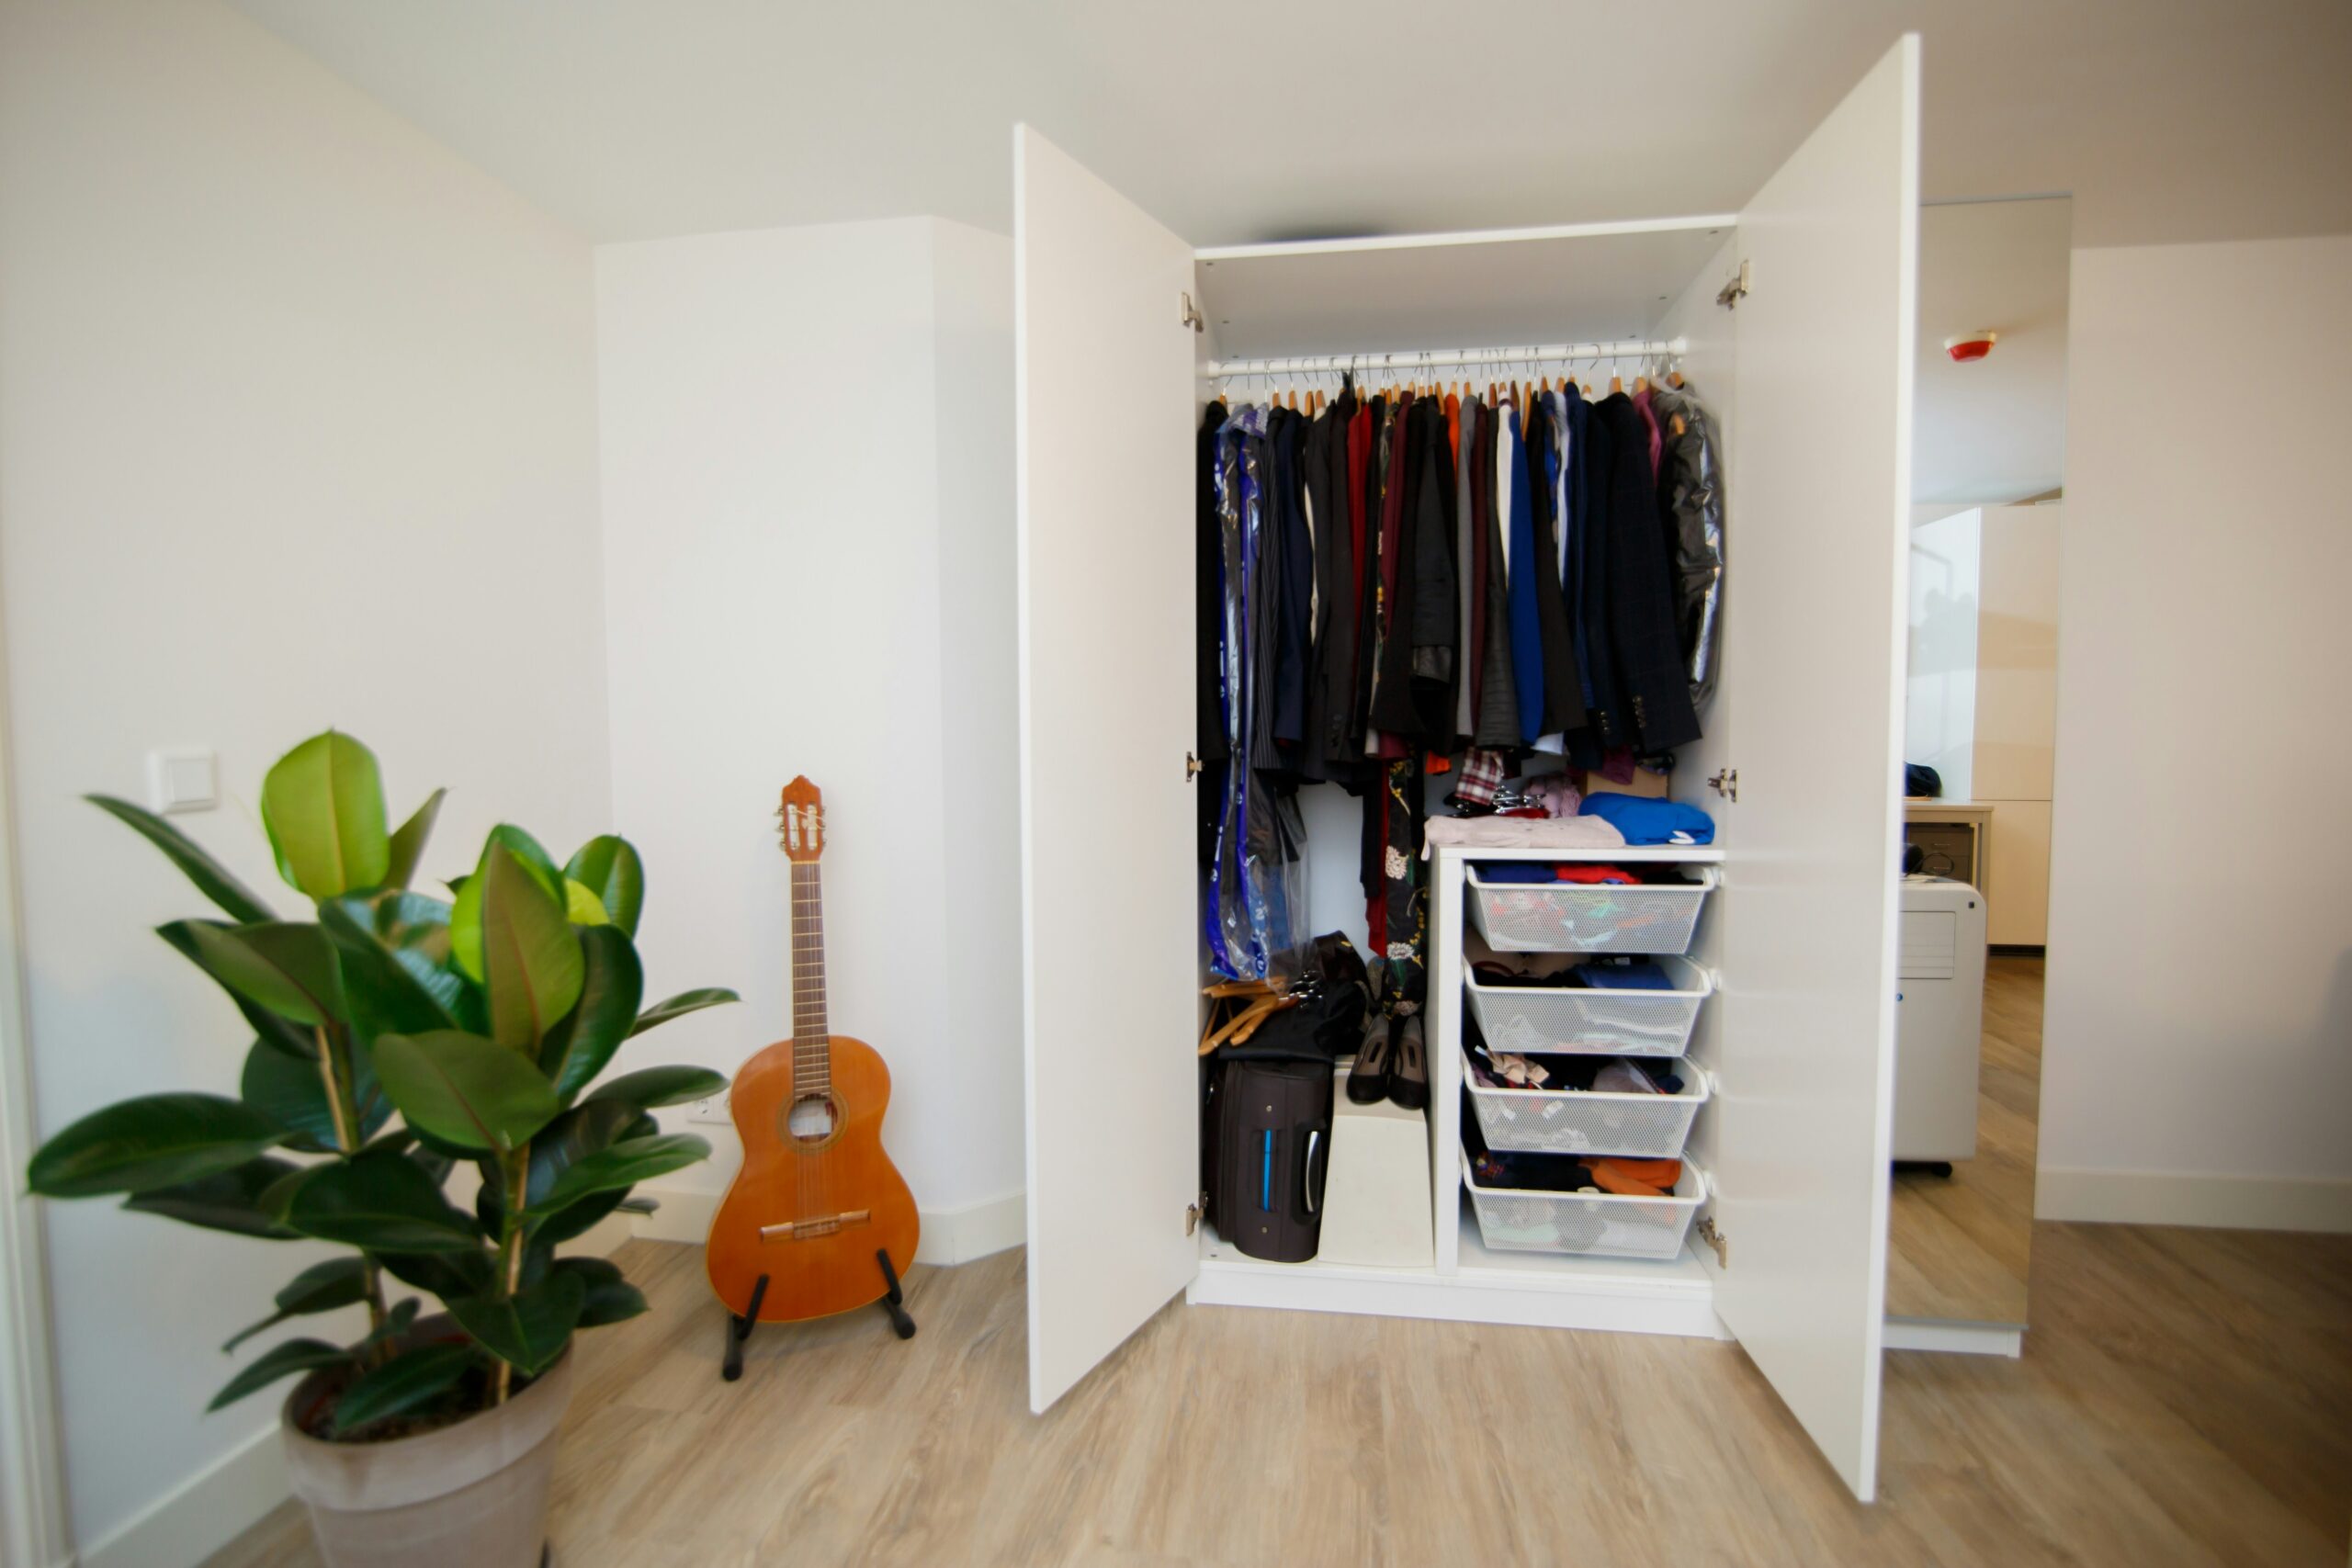 Entdecken Sie unsere große Auswahl an hochwertigen Schranklösungen für einen schön organisierten Raum. Finden Sie in unserem Shop die perfekten Aufbewahrungslösungen für Ihr Zuhause.